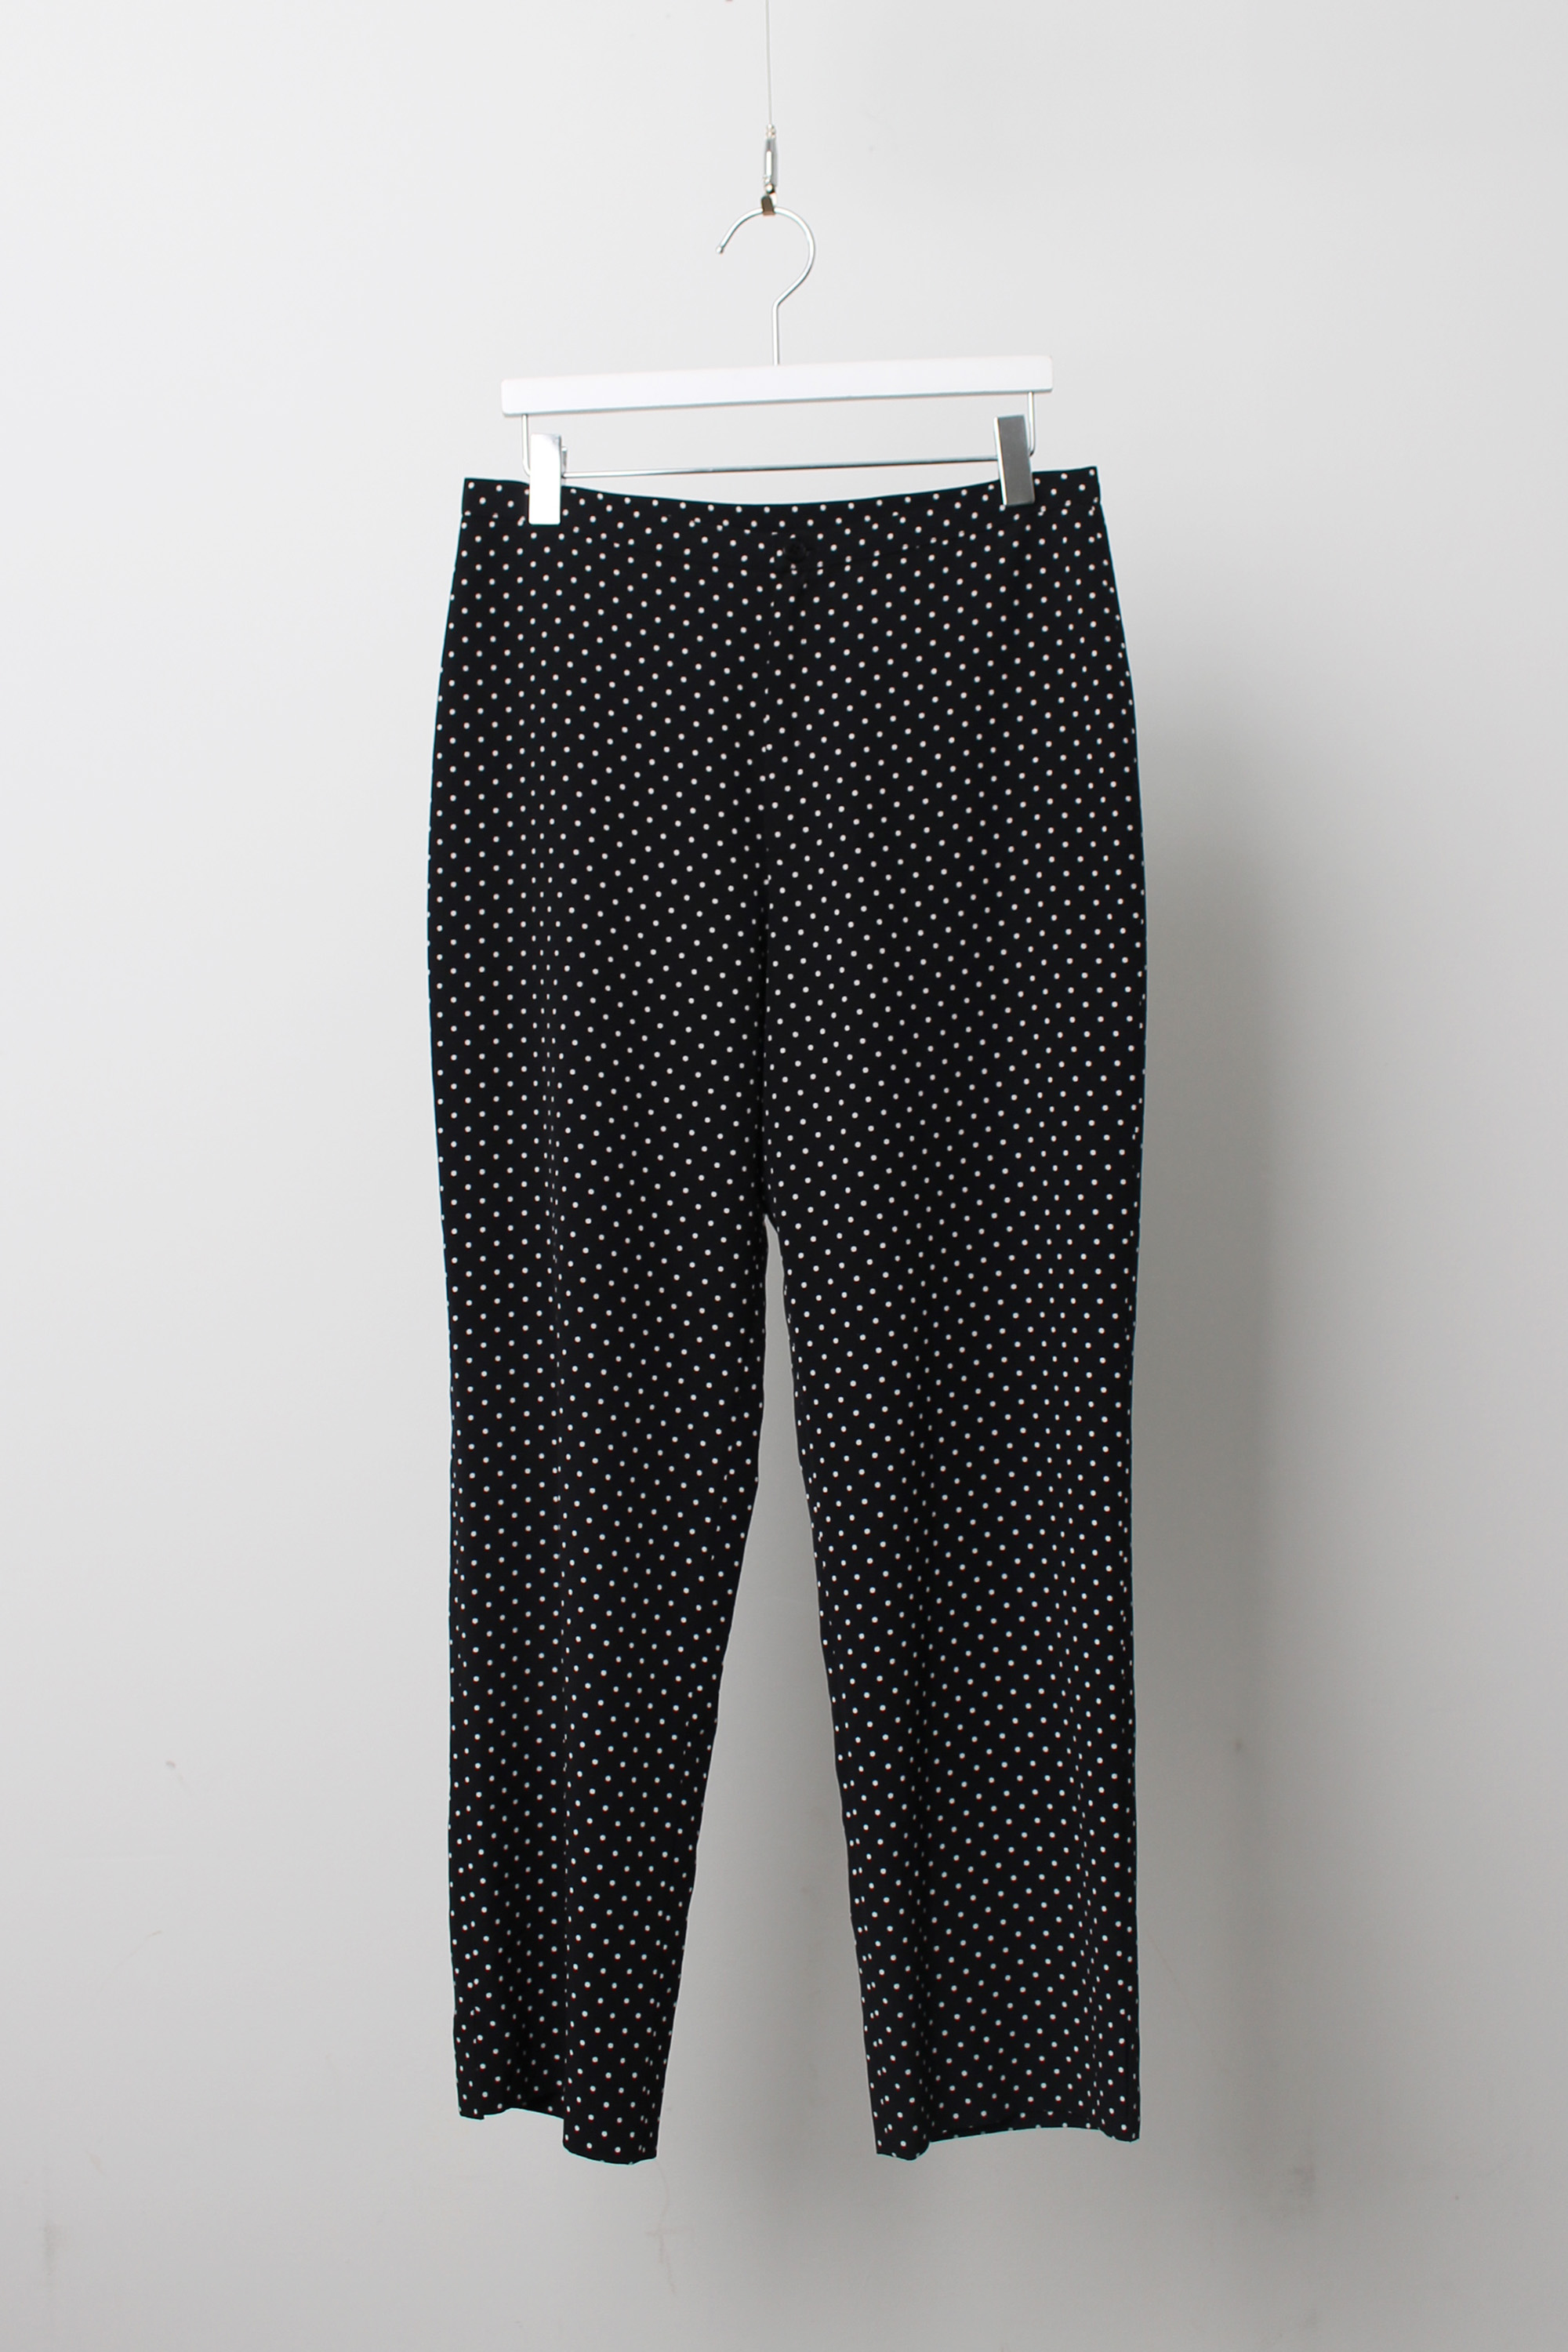 Agnes b dot pattern Pants